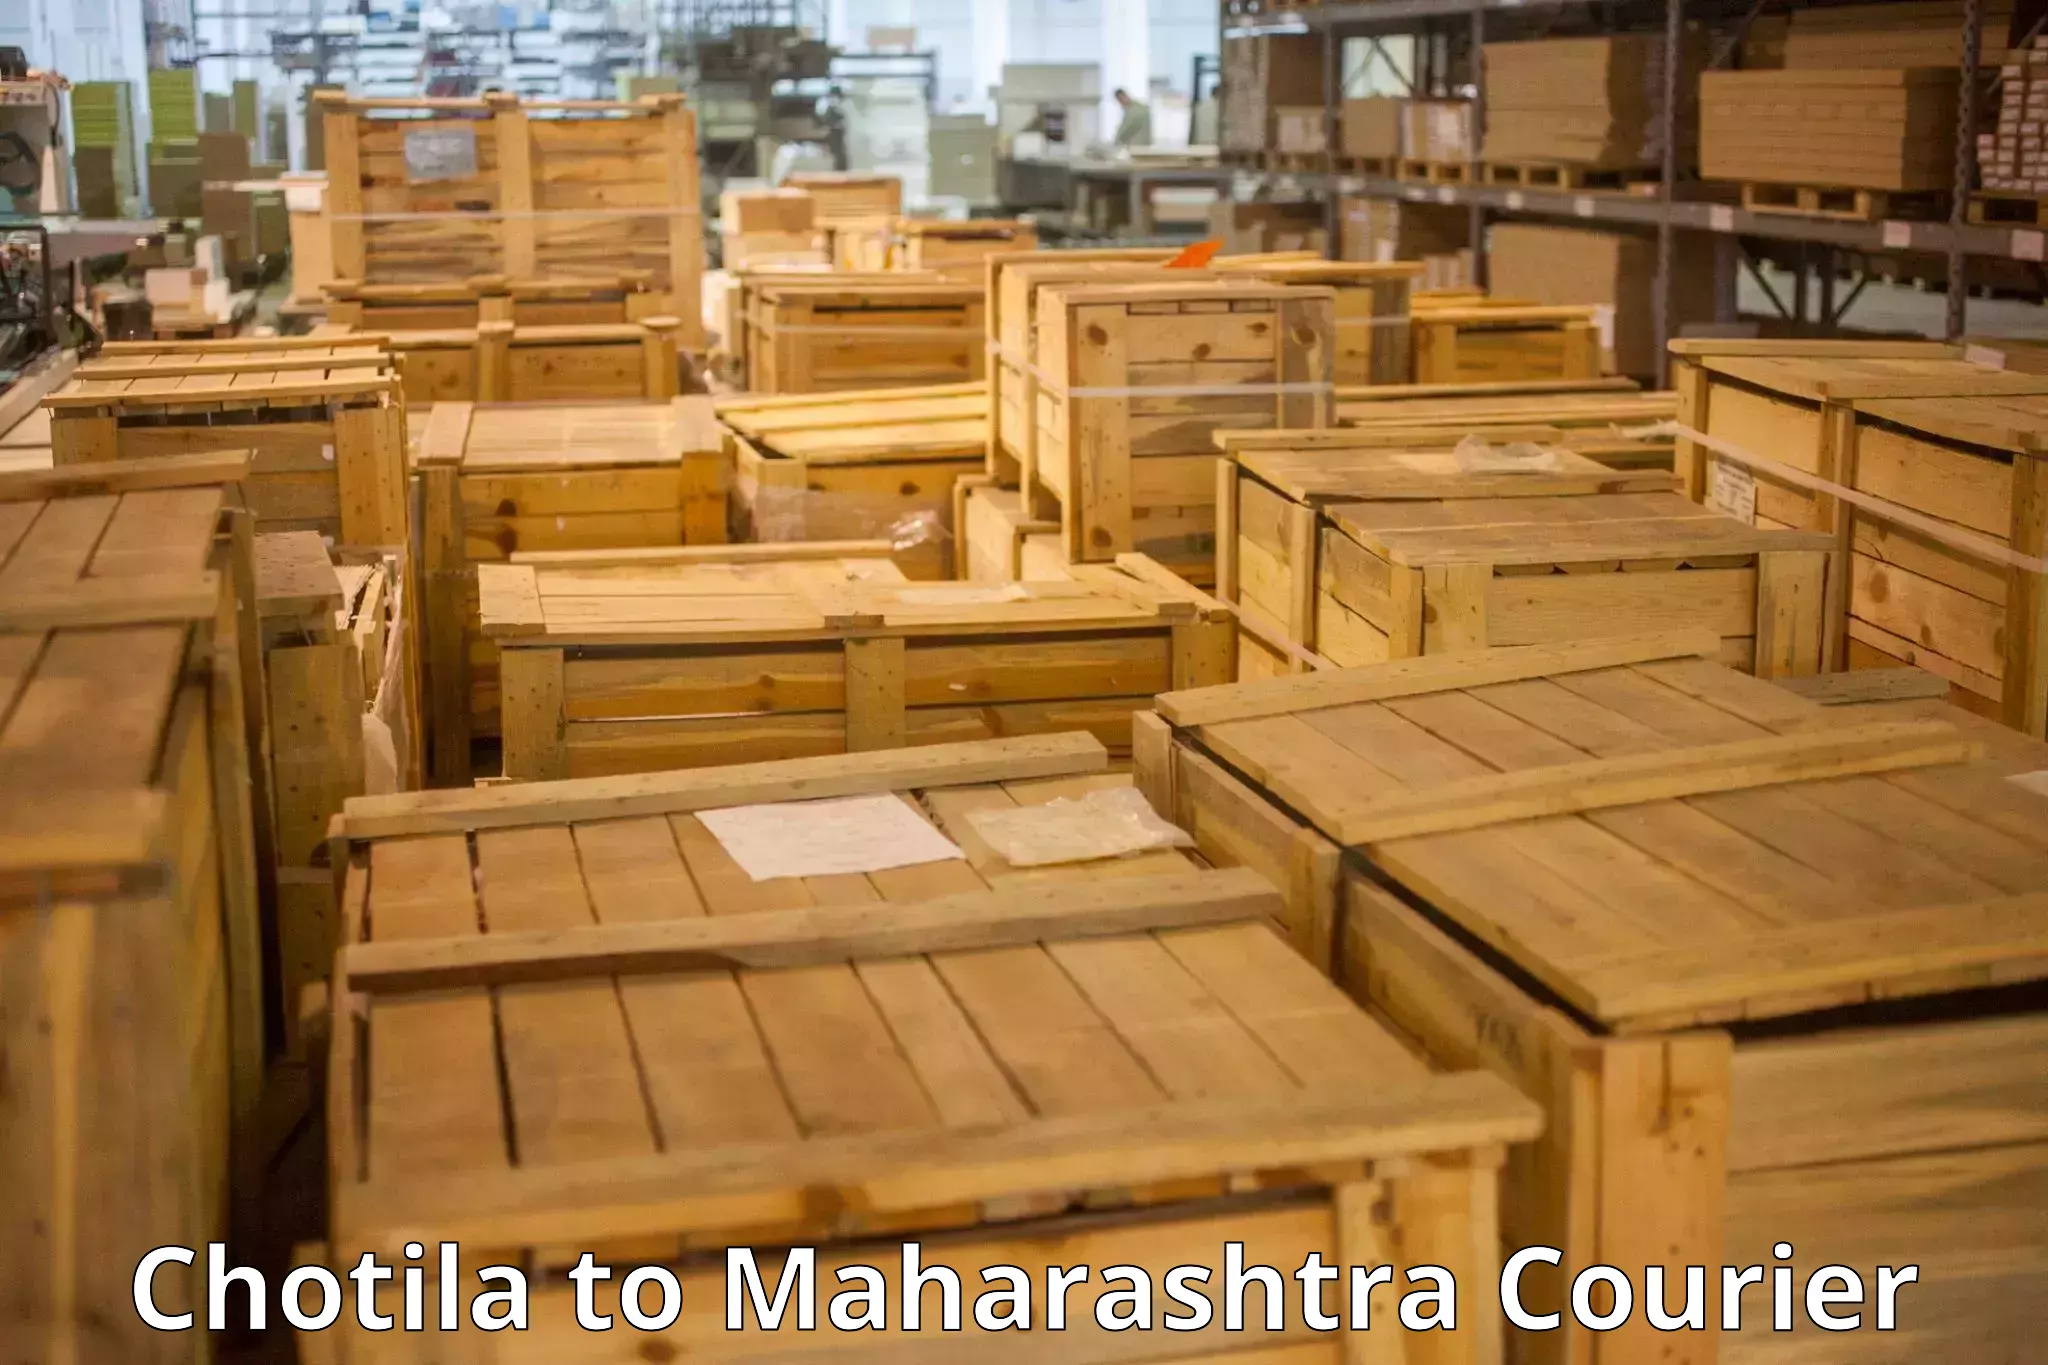 Baggage relocation service Chotila to Maharashtra